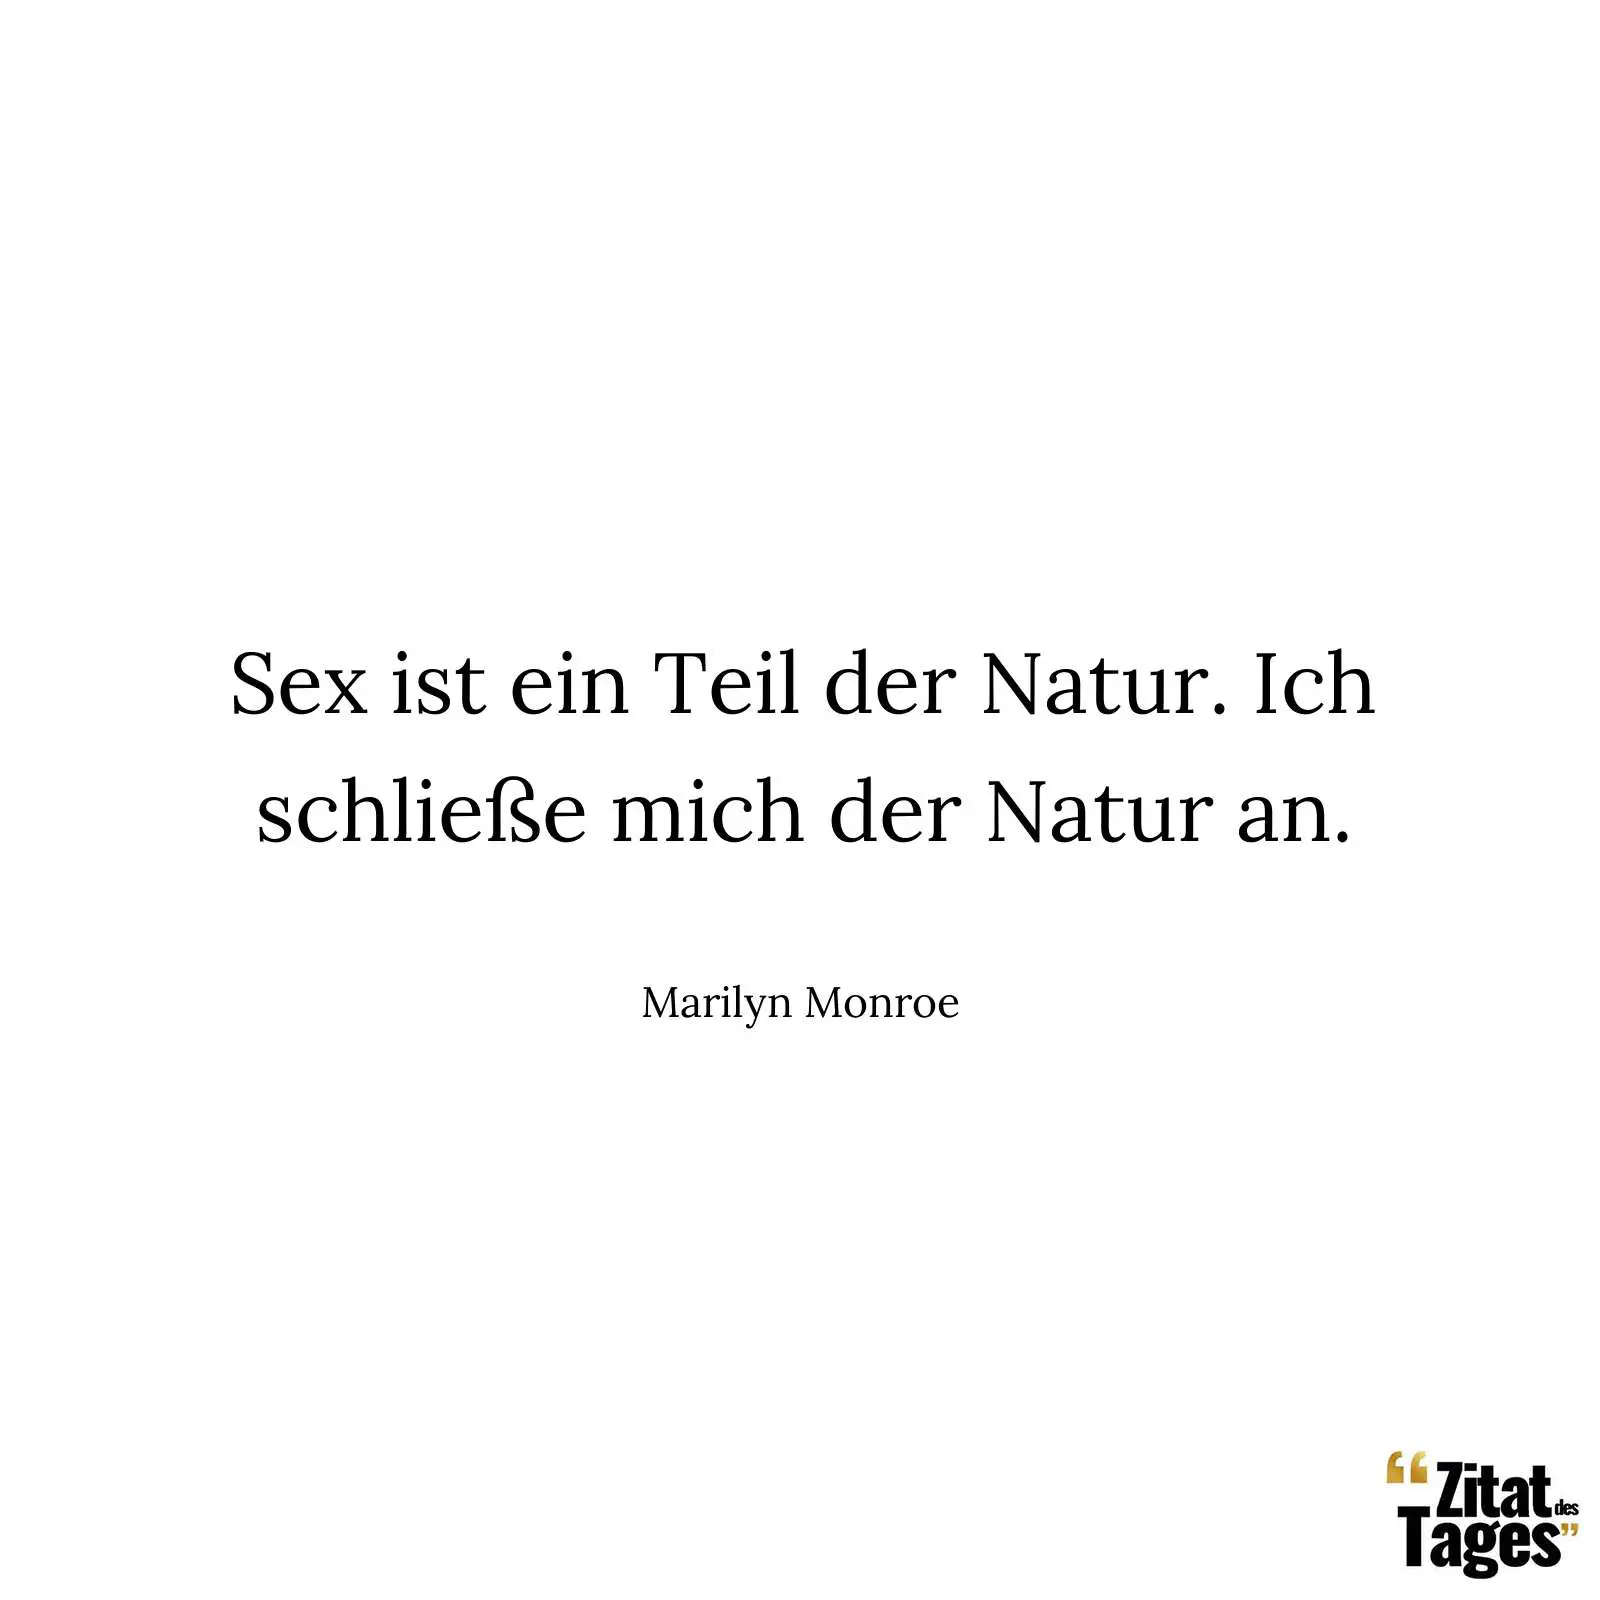 Sex ist ein Teil der Natur. Ich schließe mich der Natur an. - Marilyn Monroe